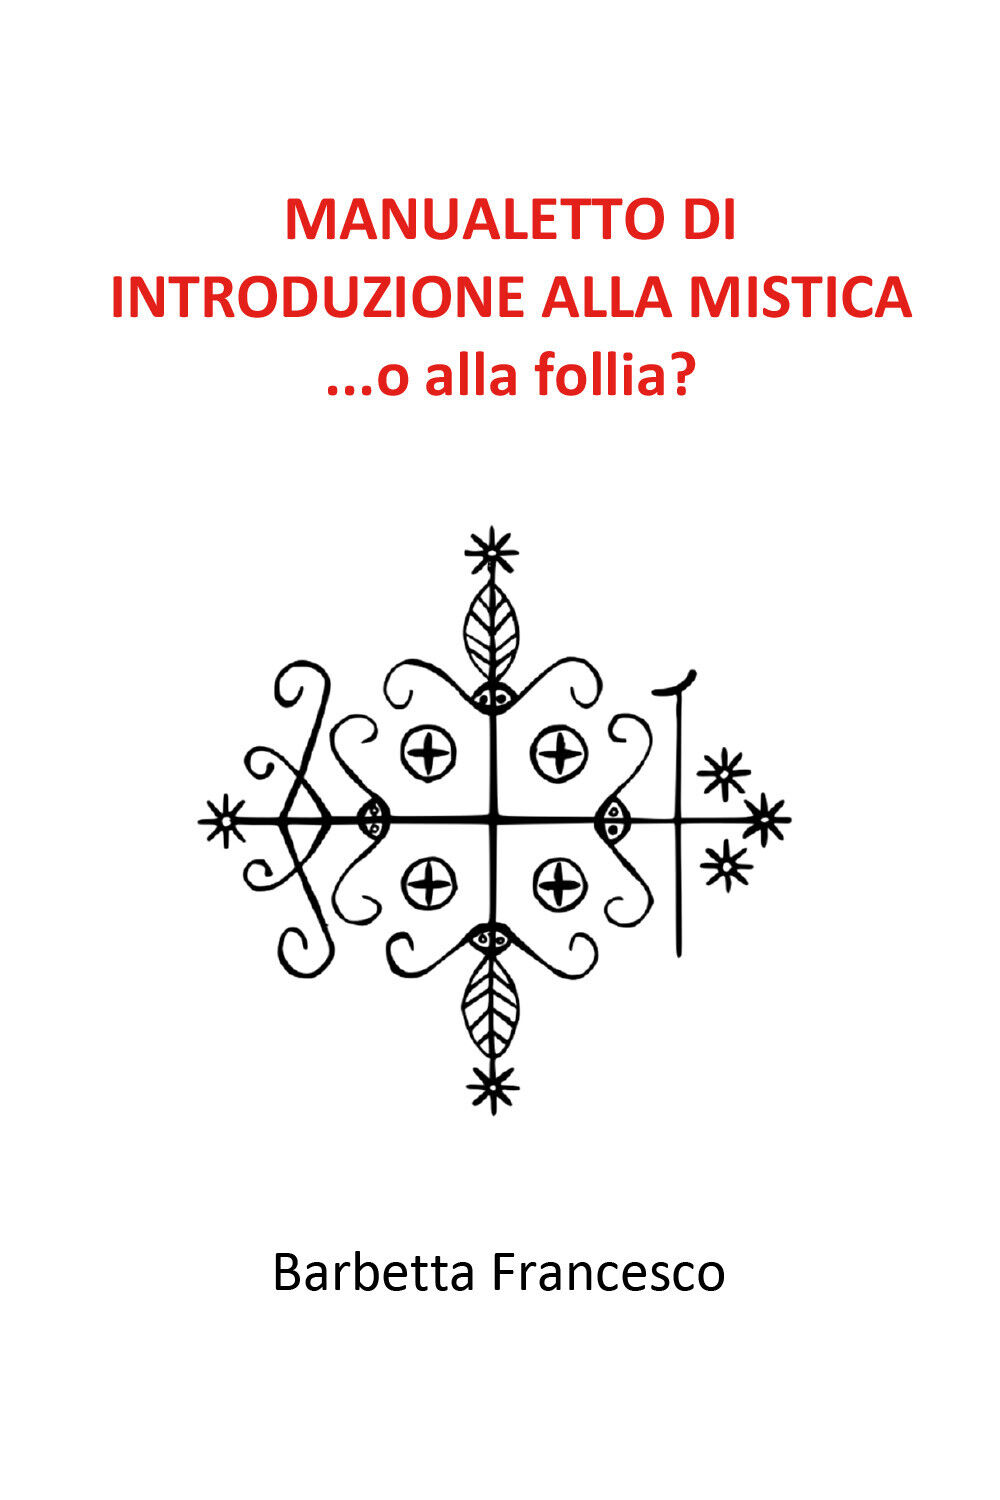 Manualetto di introduzione alla mistica di Francesco Barbetta,  2020,  Youcanpri